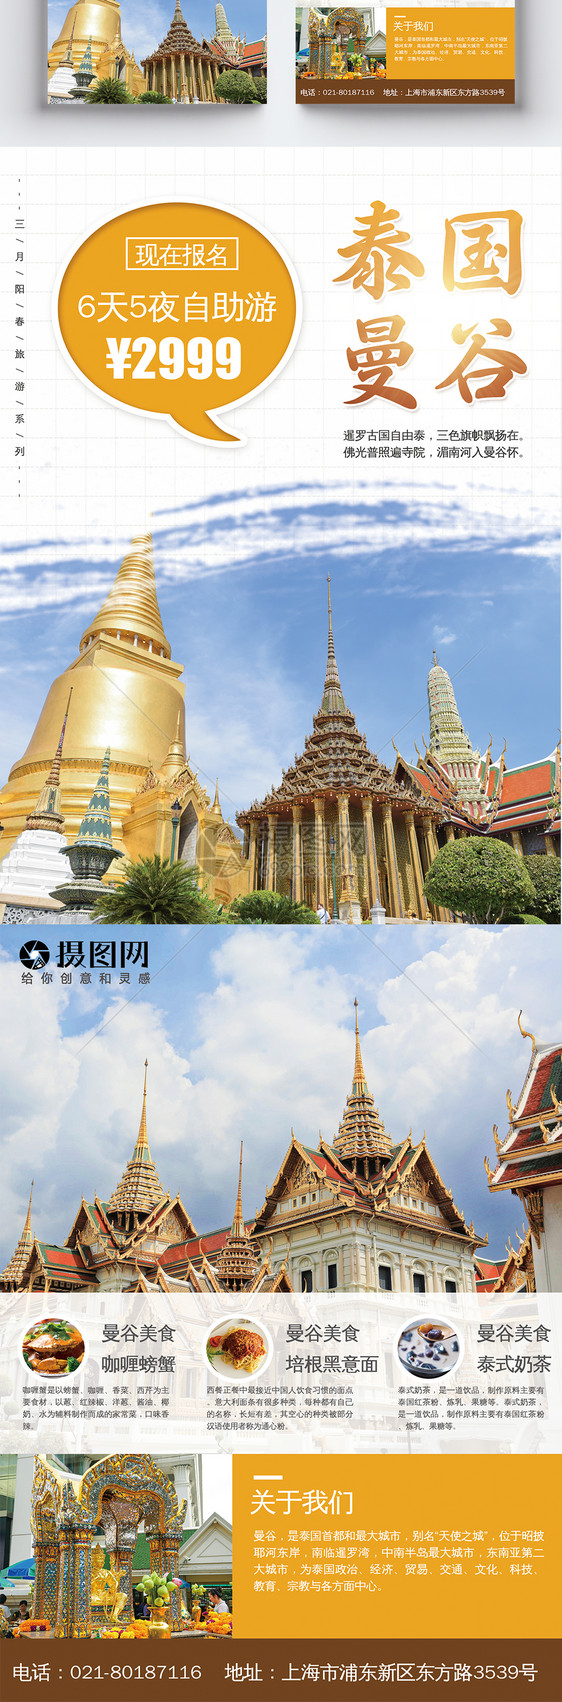 泰国曼谷旅游单页图片